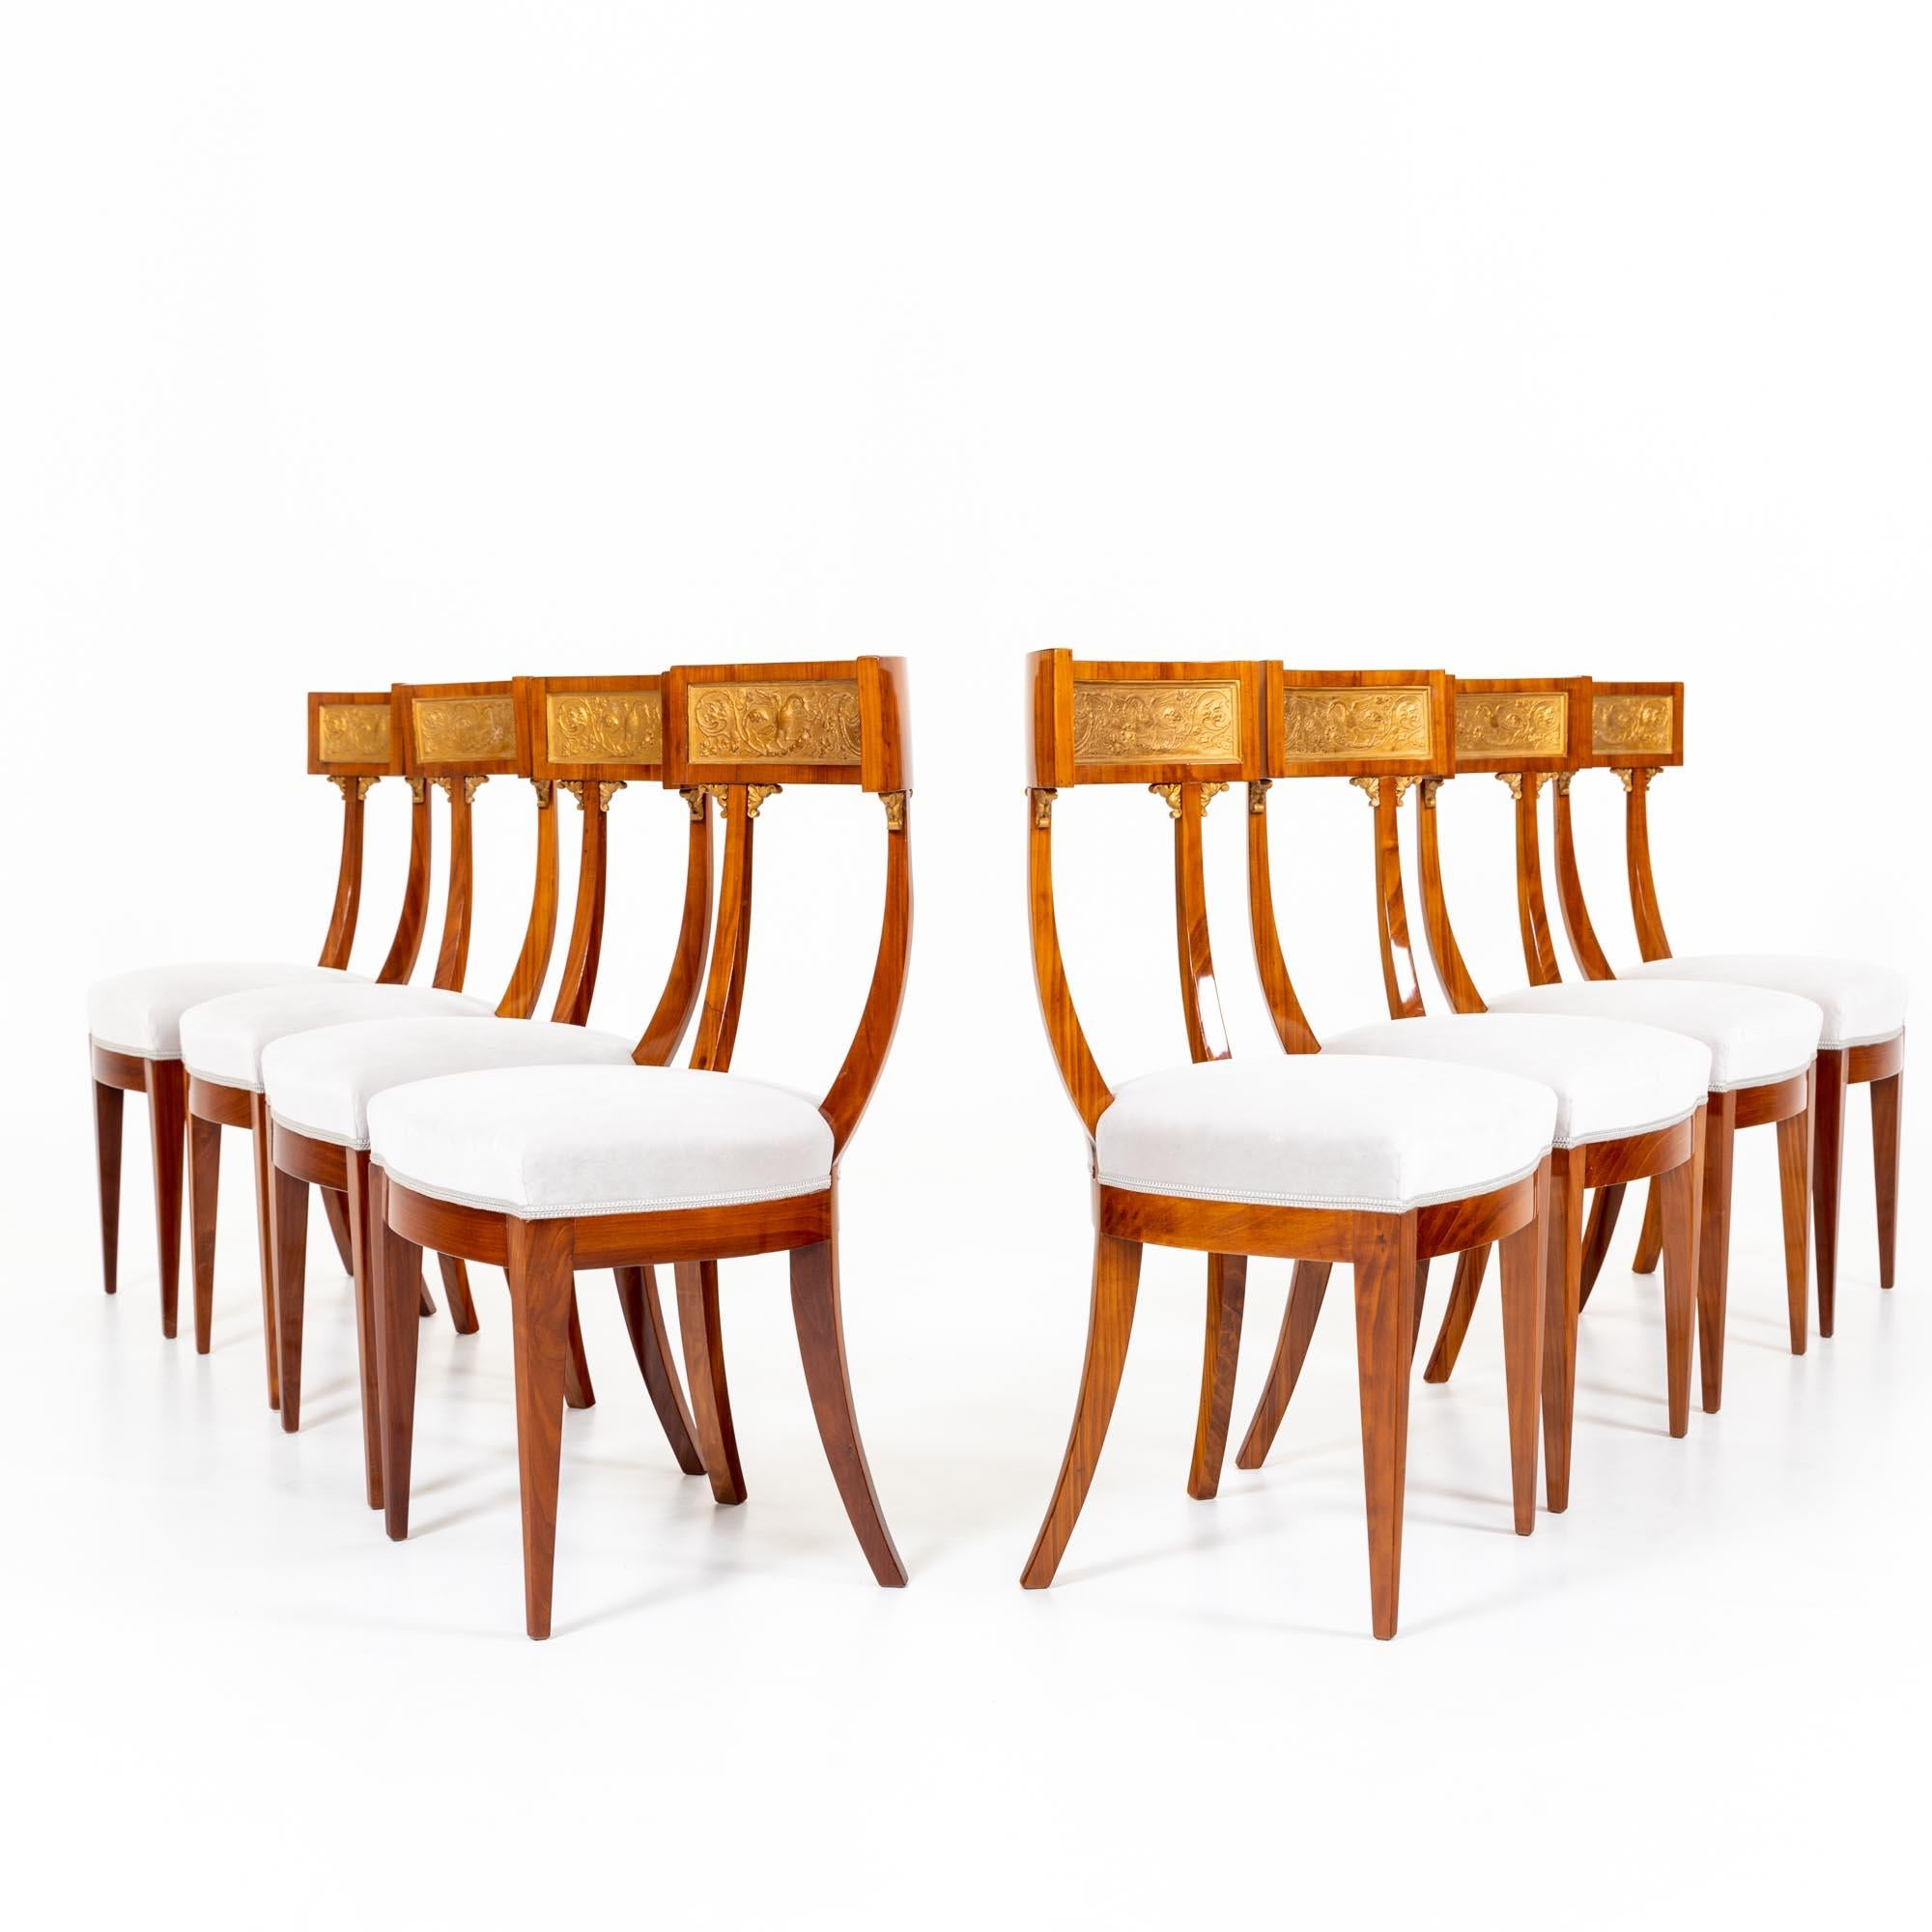 Acht neoklassizistische Esszimmerstühle im Stil der antiken Klismos-Stühle mit ausgestellten und gerade verjüngten Beinen sowie hohen Rückenlehnen mit geschwungenen Streben und abgerundetem Oberteil. Die gepolsterten Stühle sind in der Rückenlehne